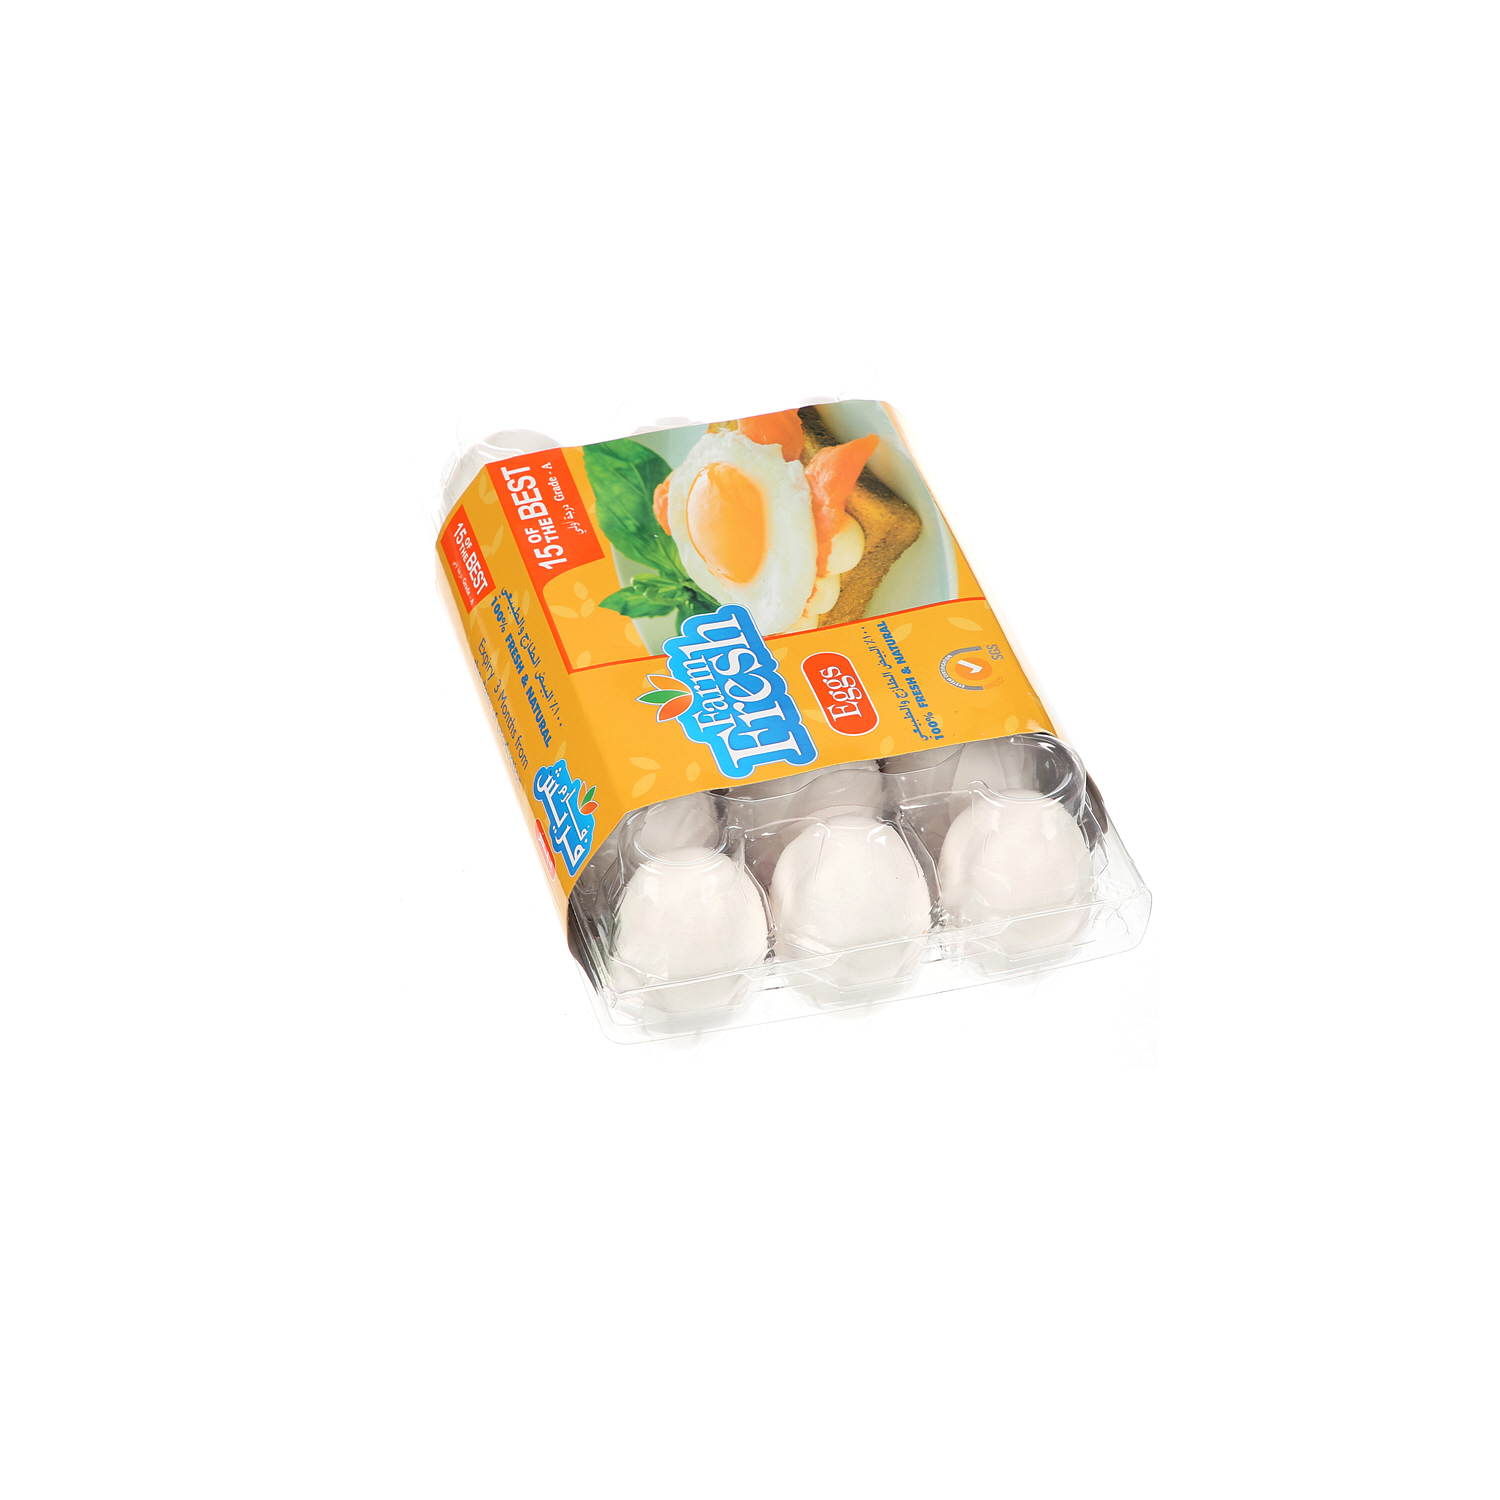 Farm Fresh White Eggs 15 Pack